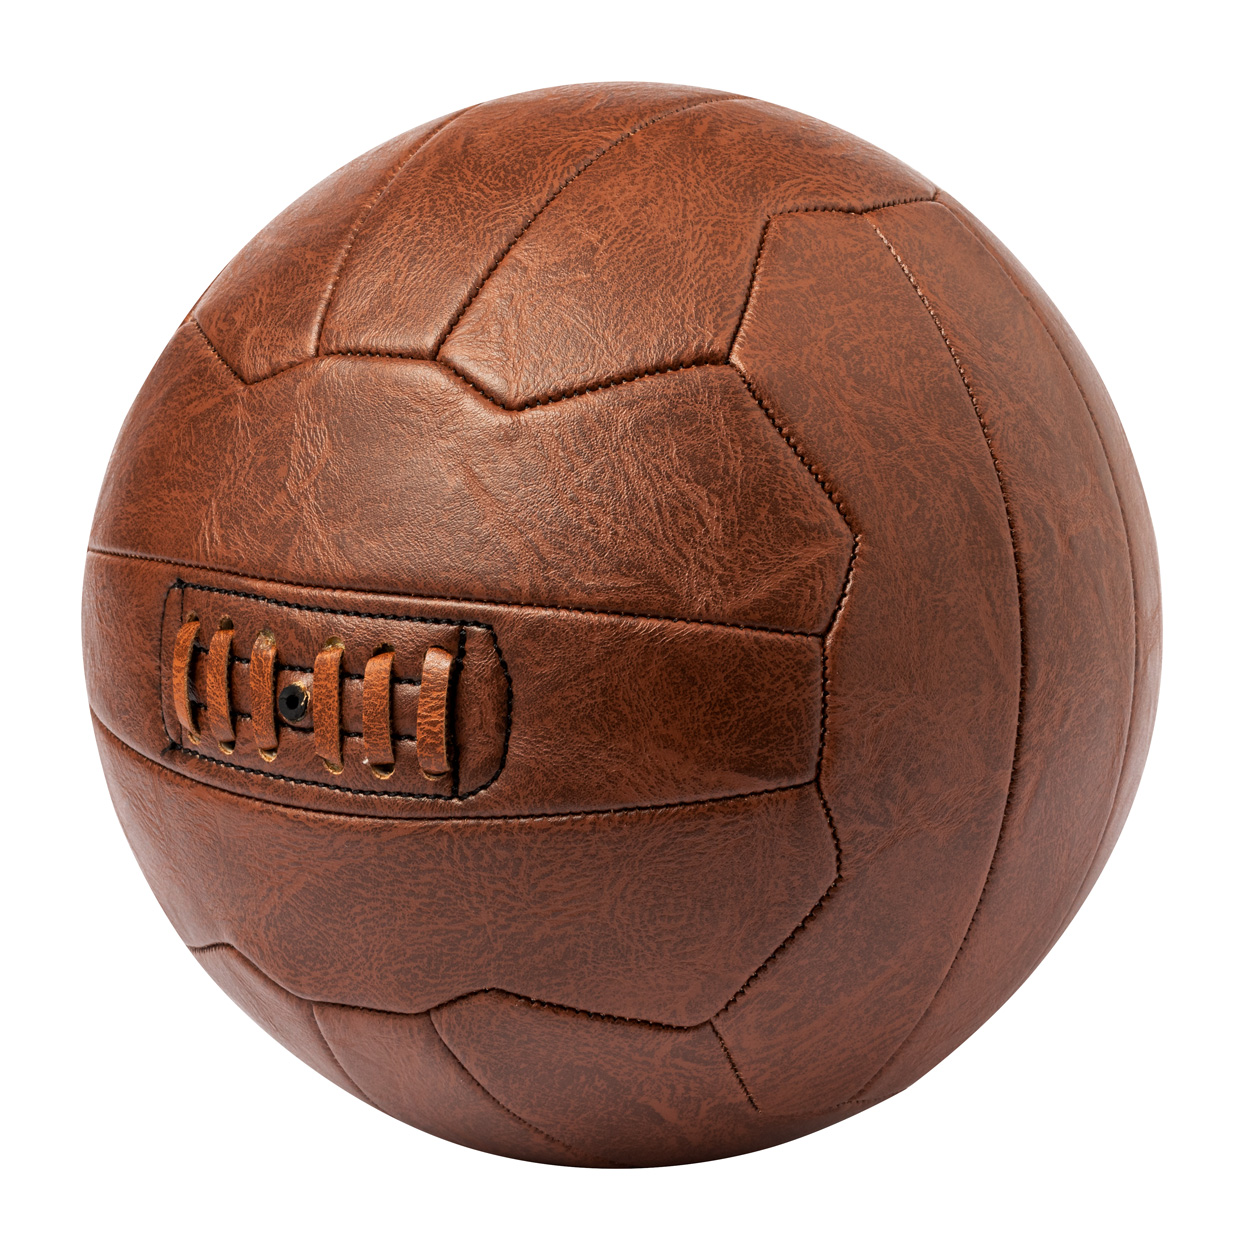 Horisun Football - brown